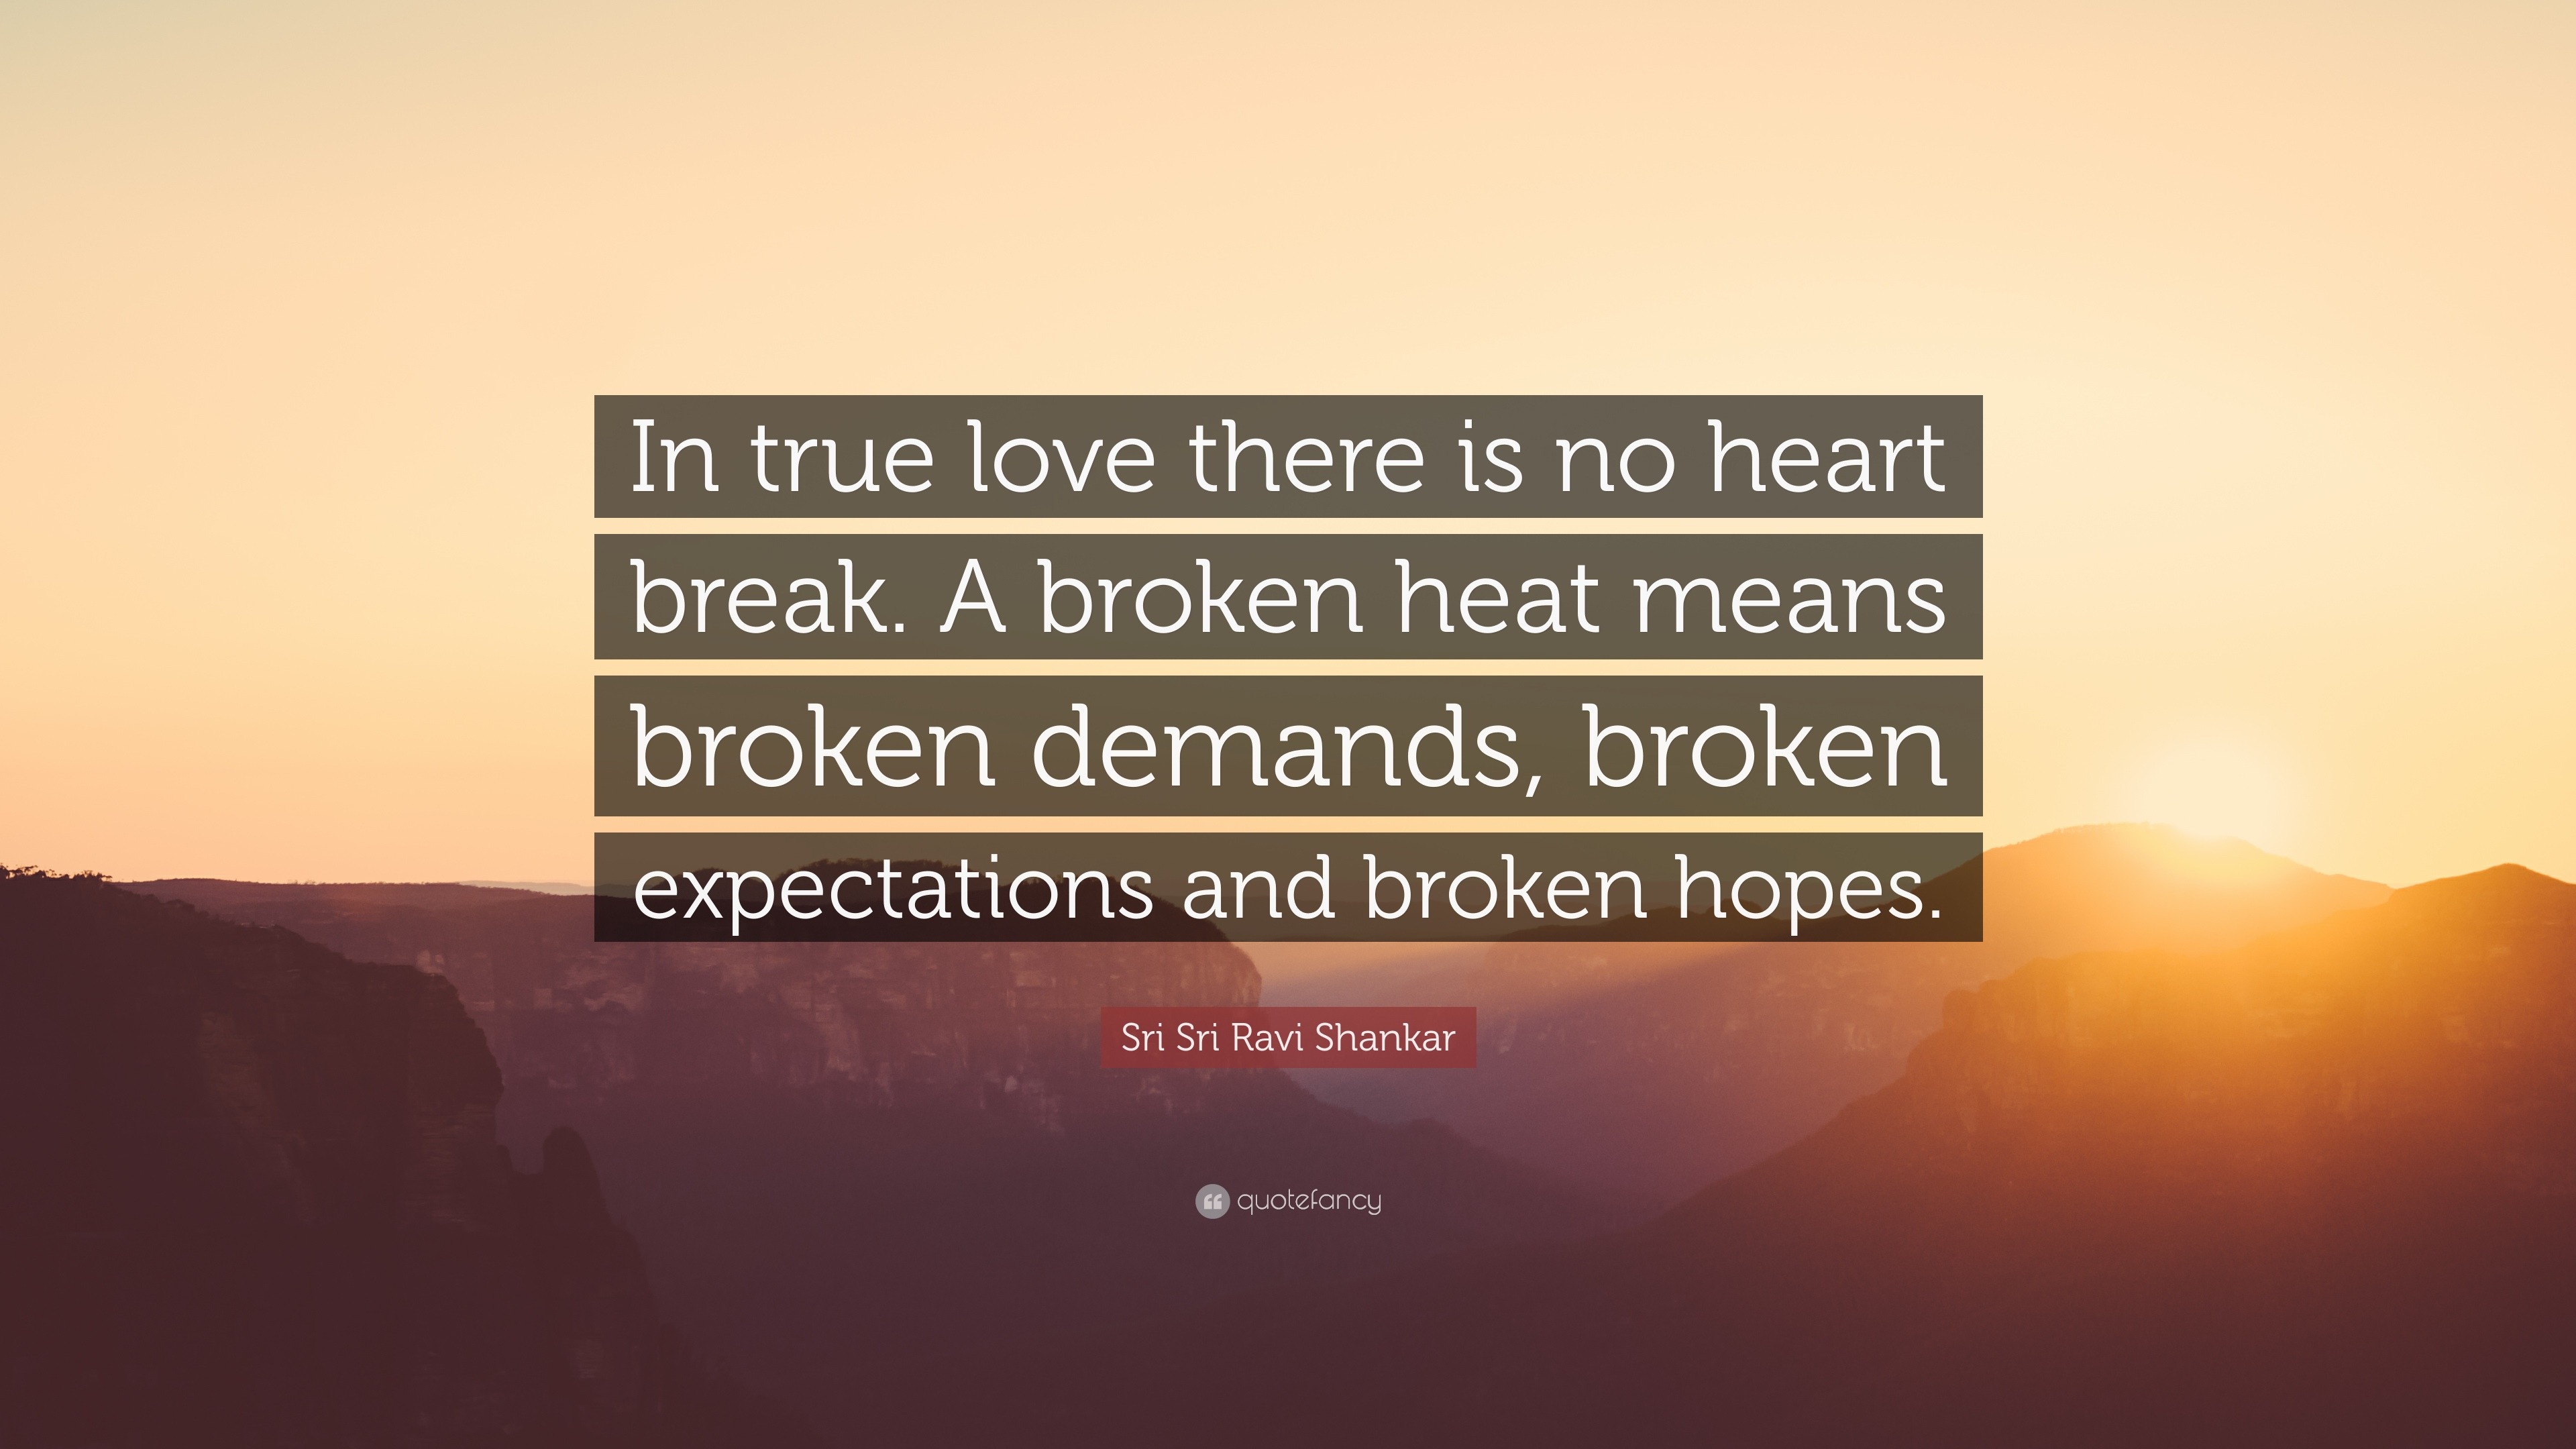 Sri Sri Ravi Shankar Quote “In true love there is no heart break